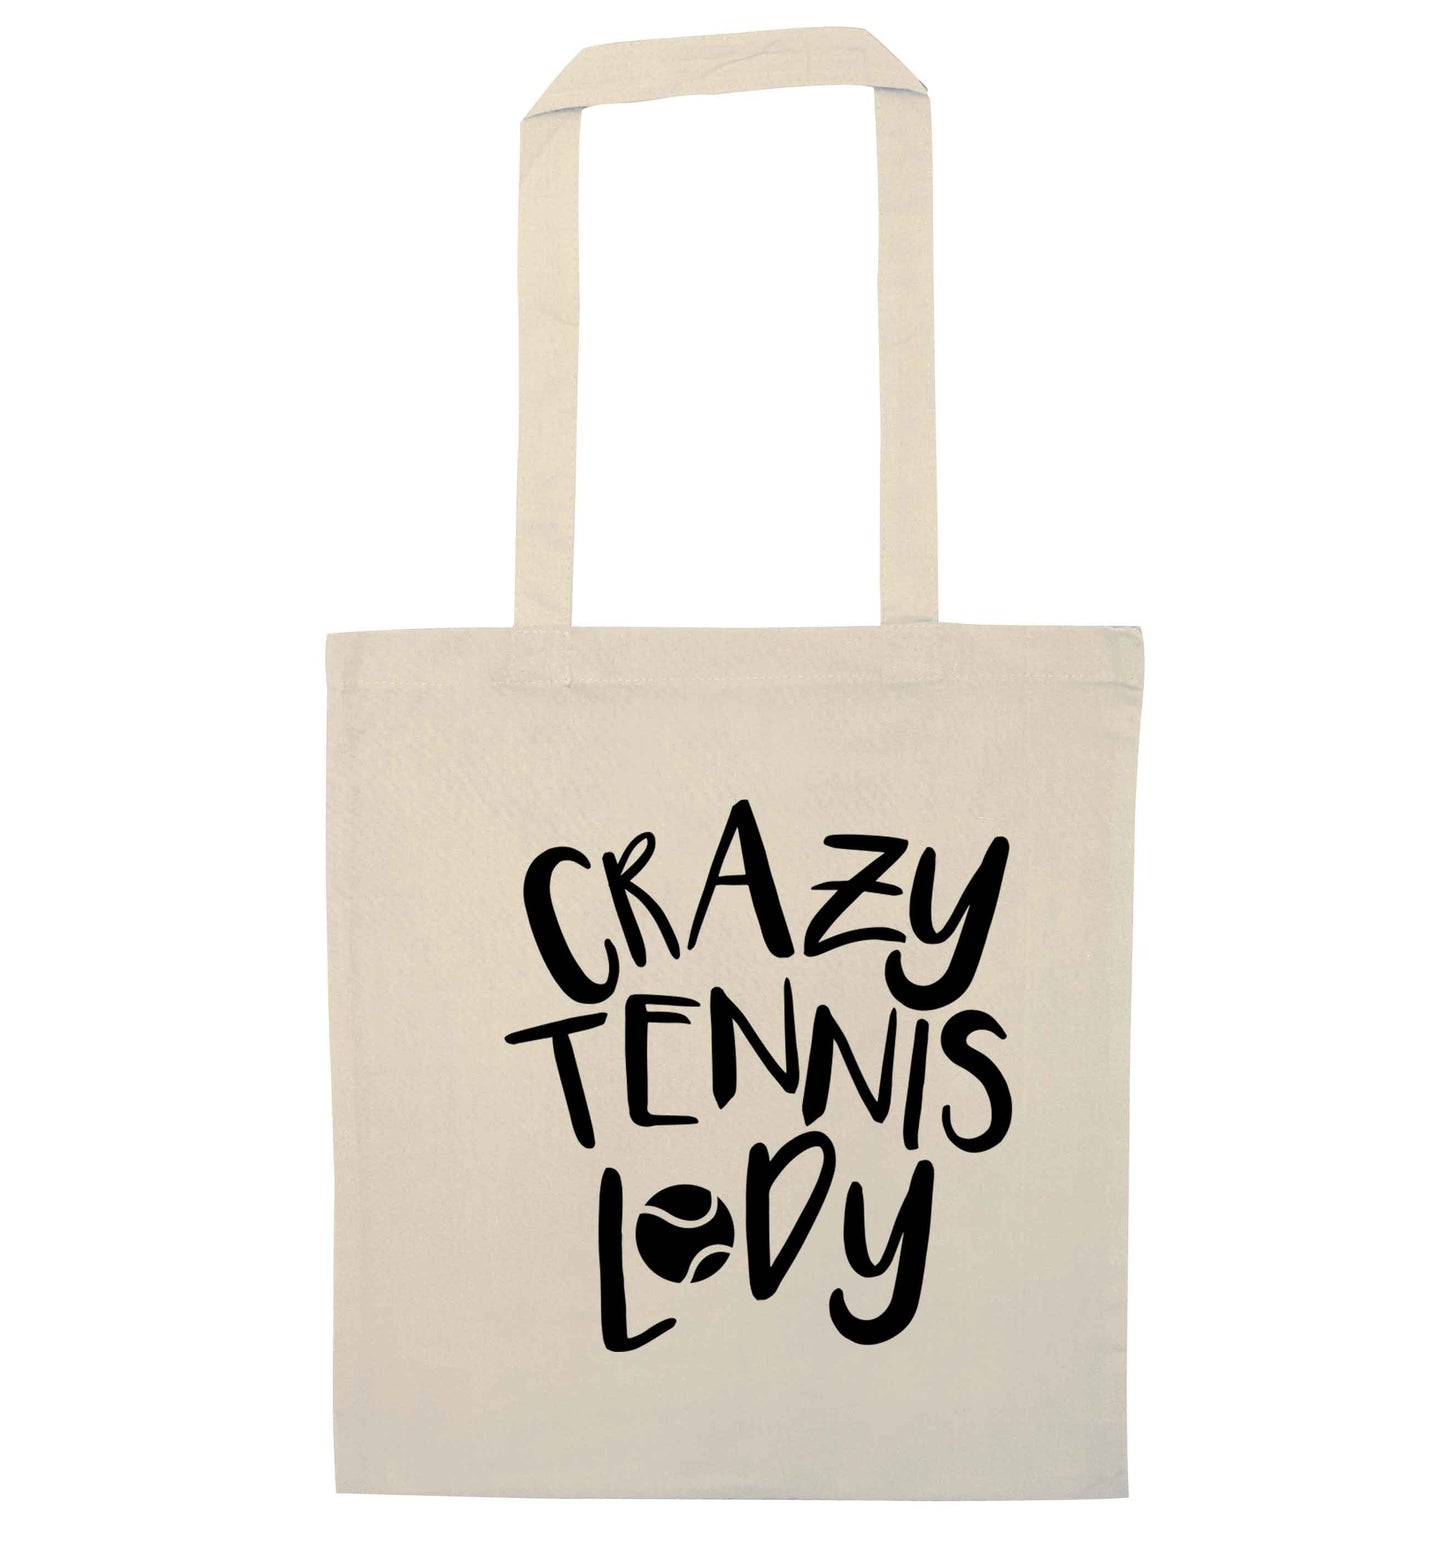 Crazy tennis lady natural tote bag